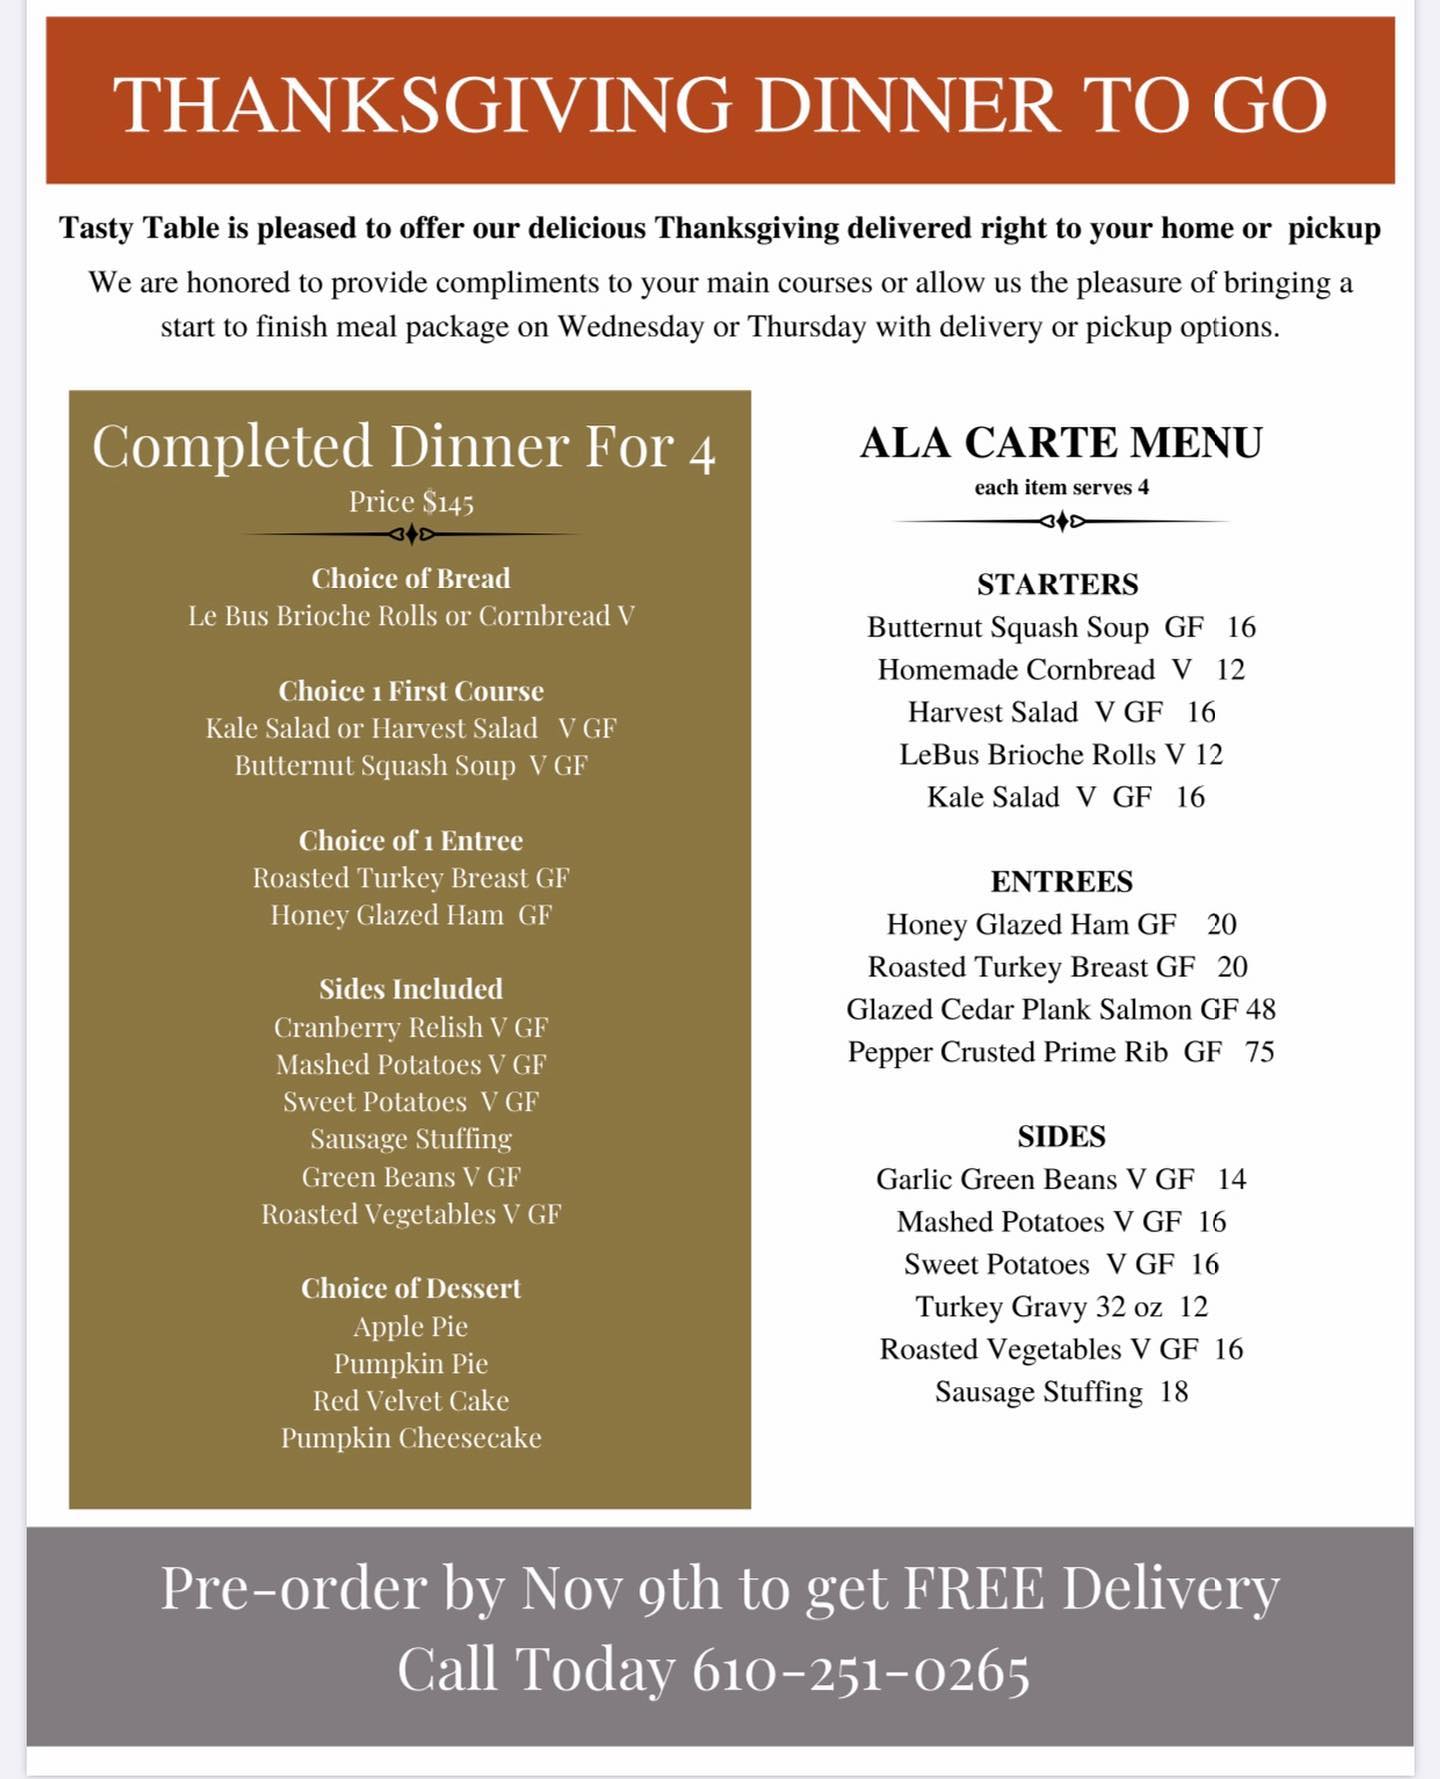 Thanksgiving Dinner Catering Philadelphia 2020